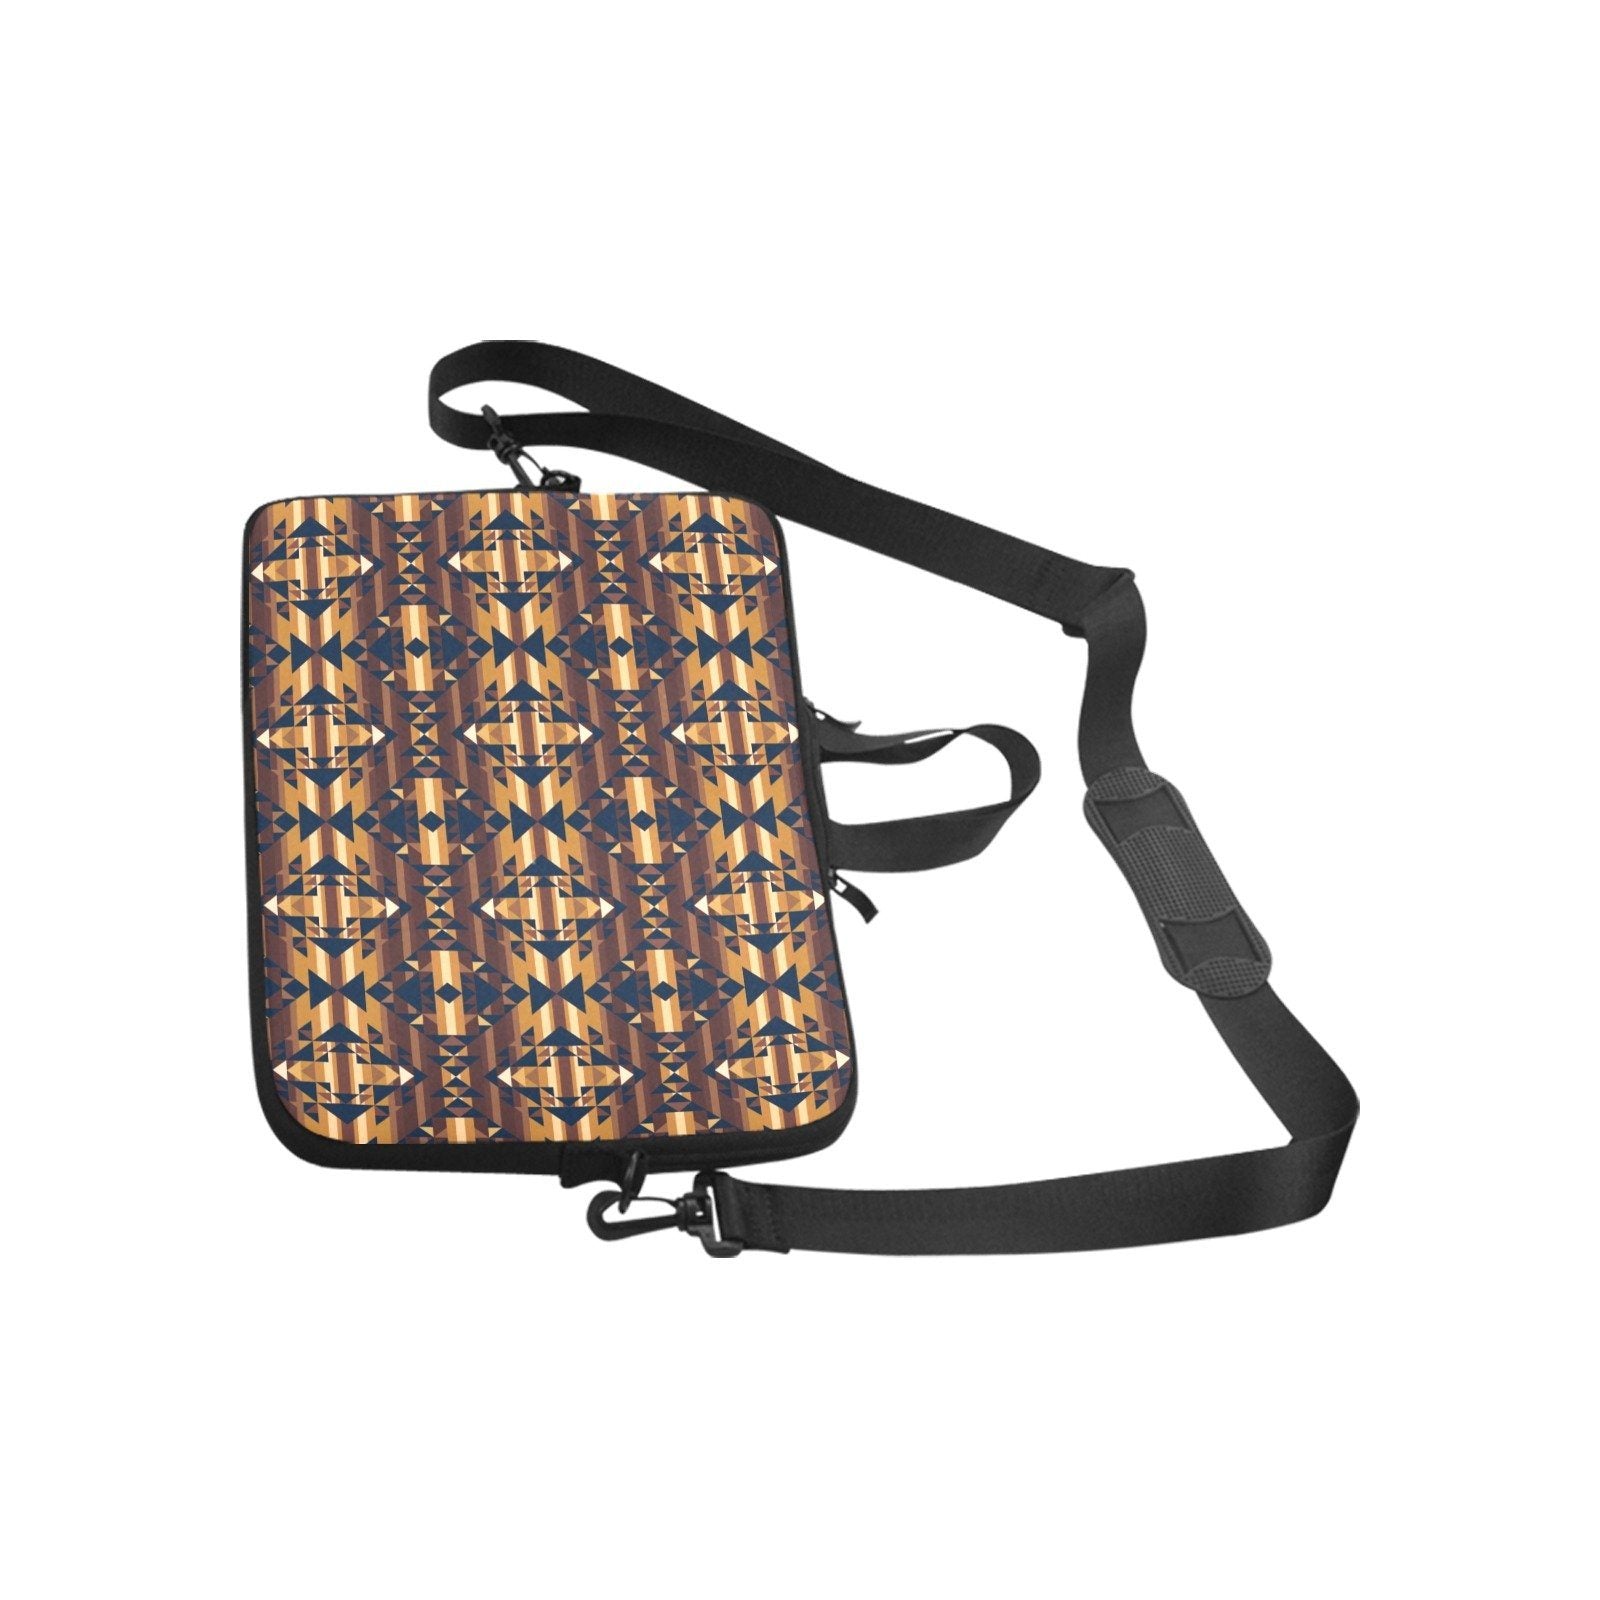 Marron Cloud Laptop Handbags 11" bag e-joyer 